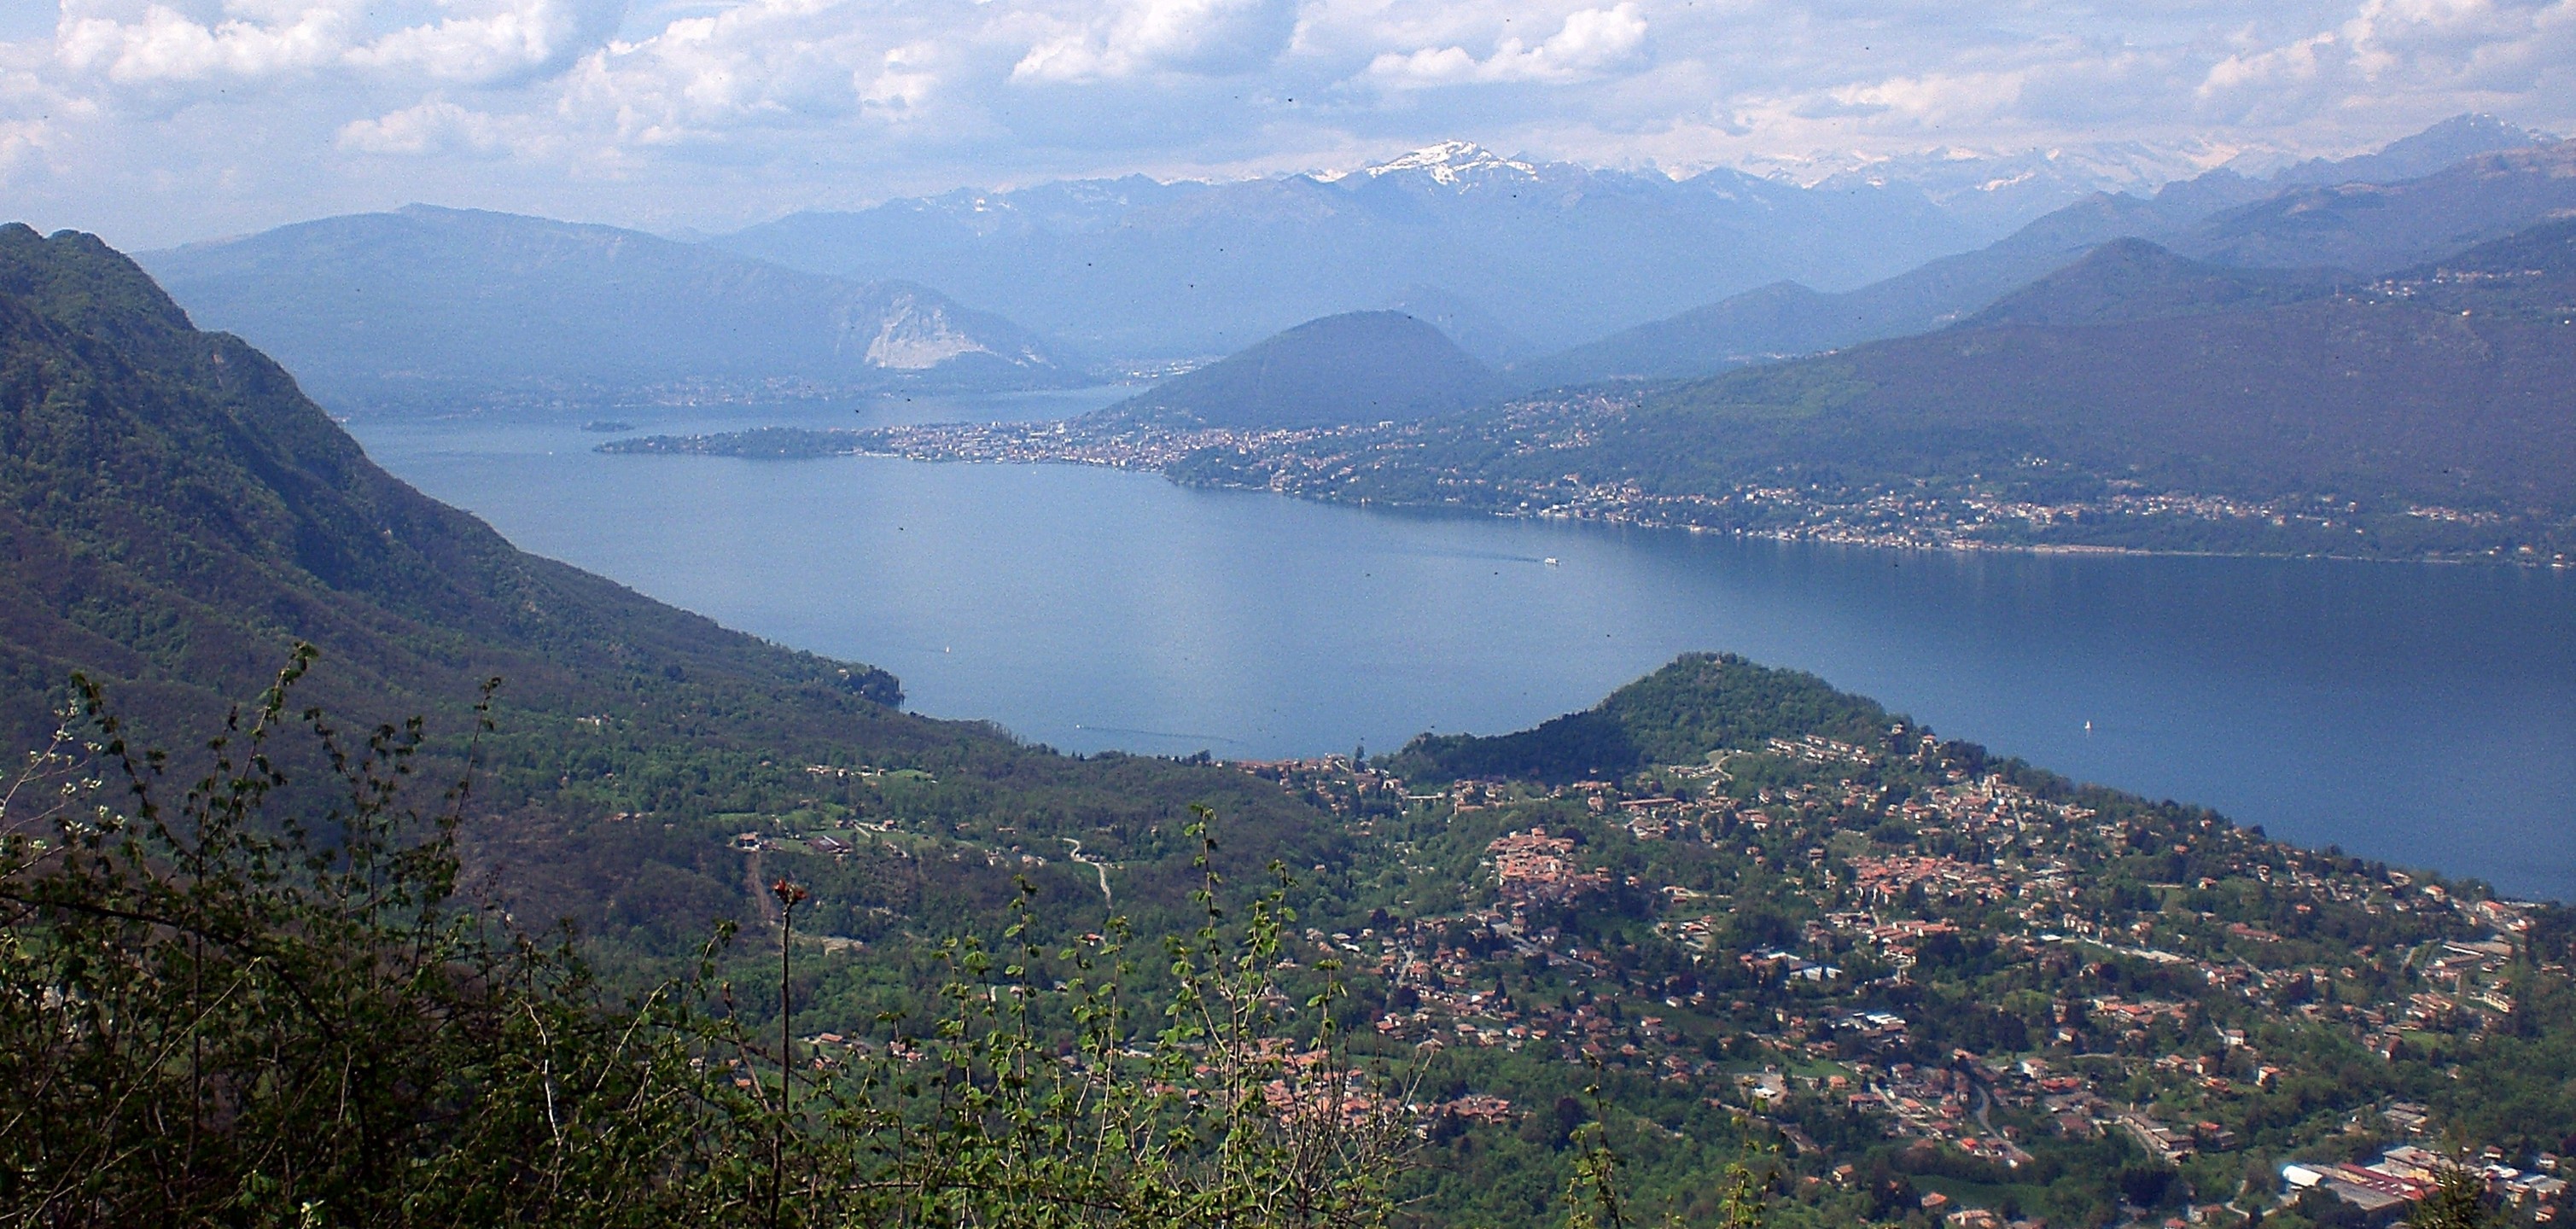 Alpe San Michele